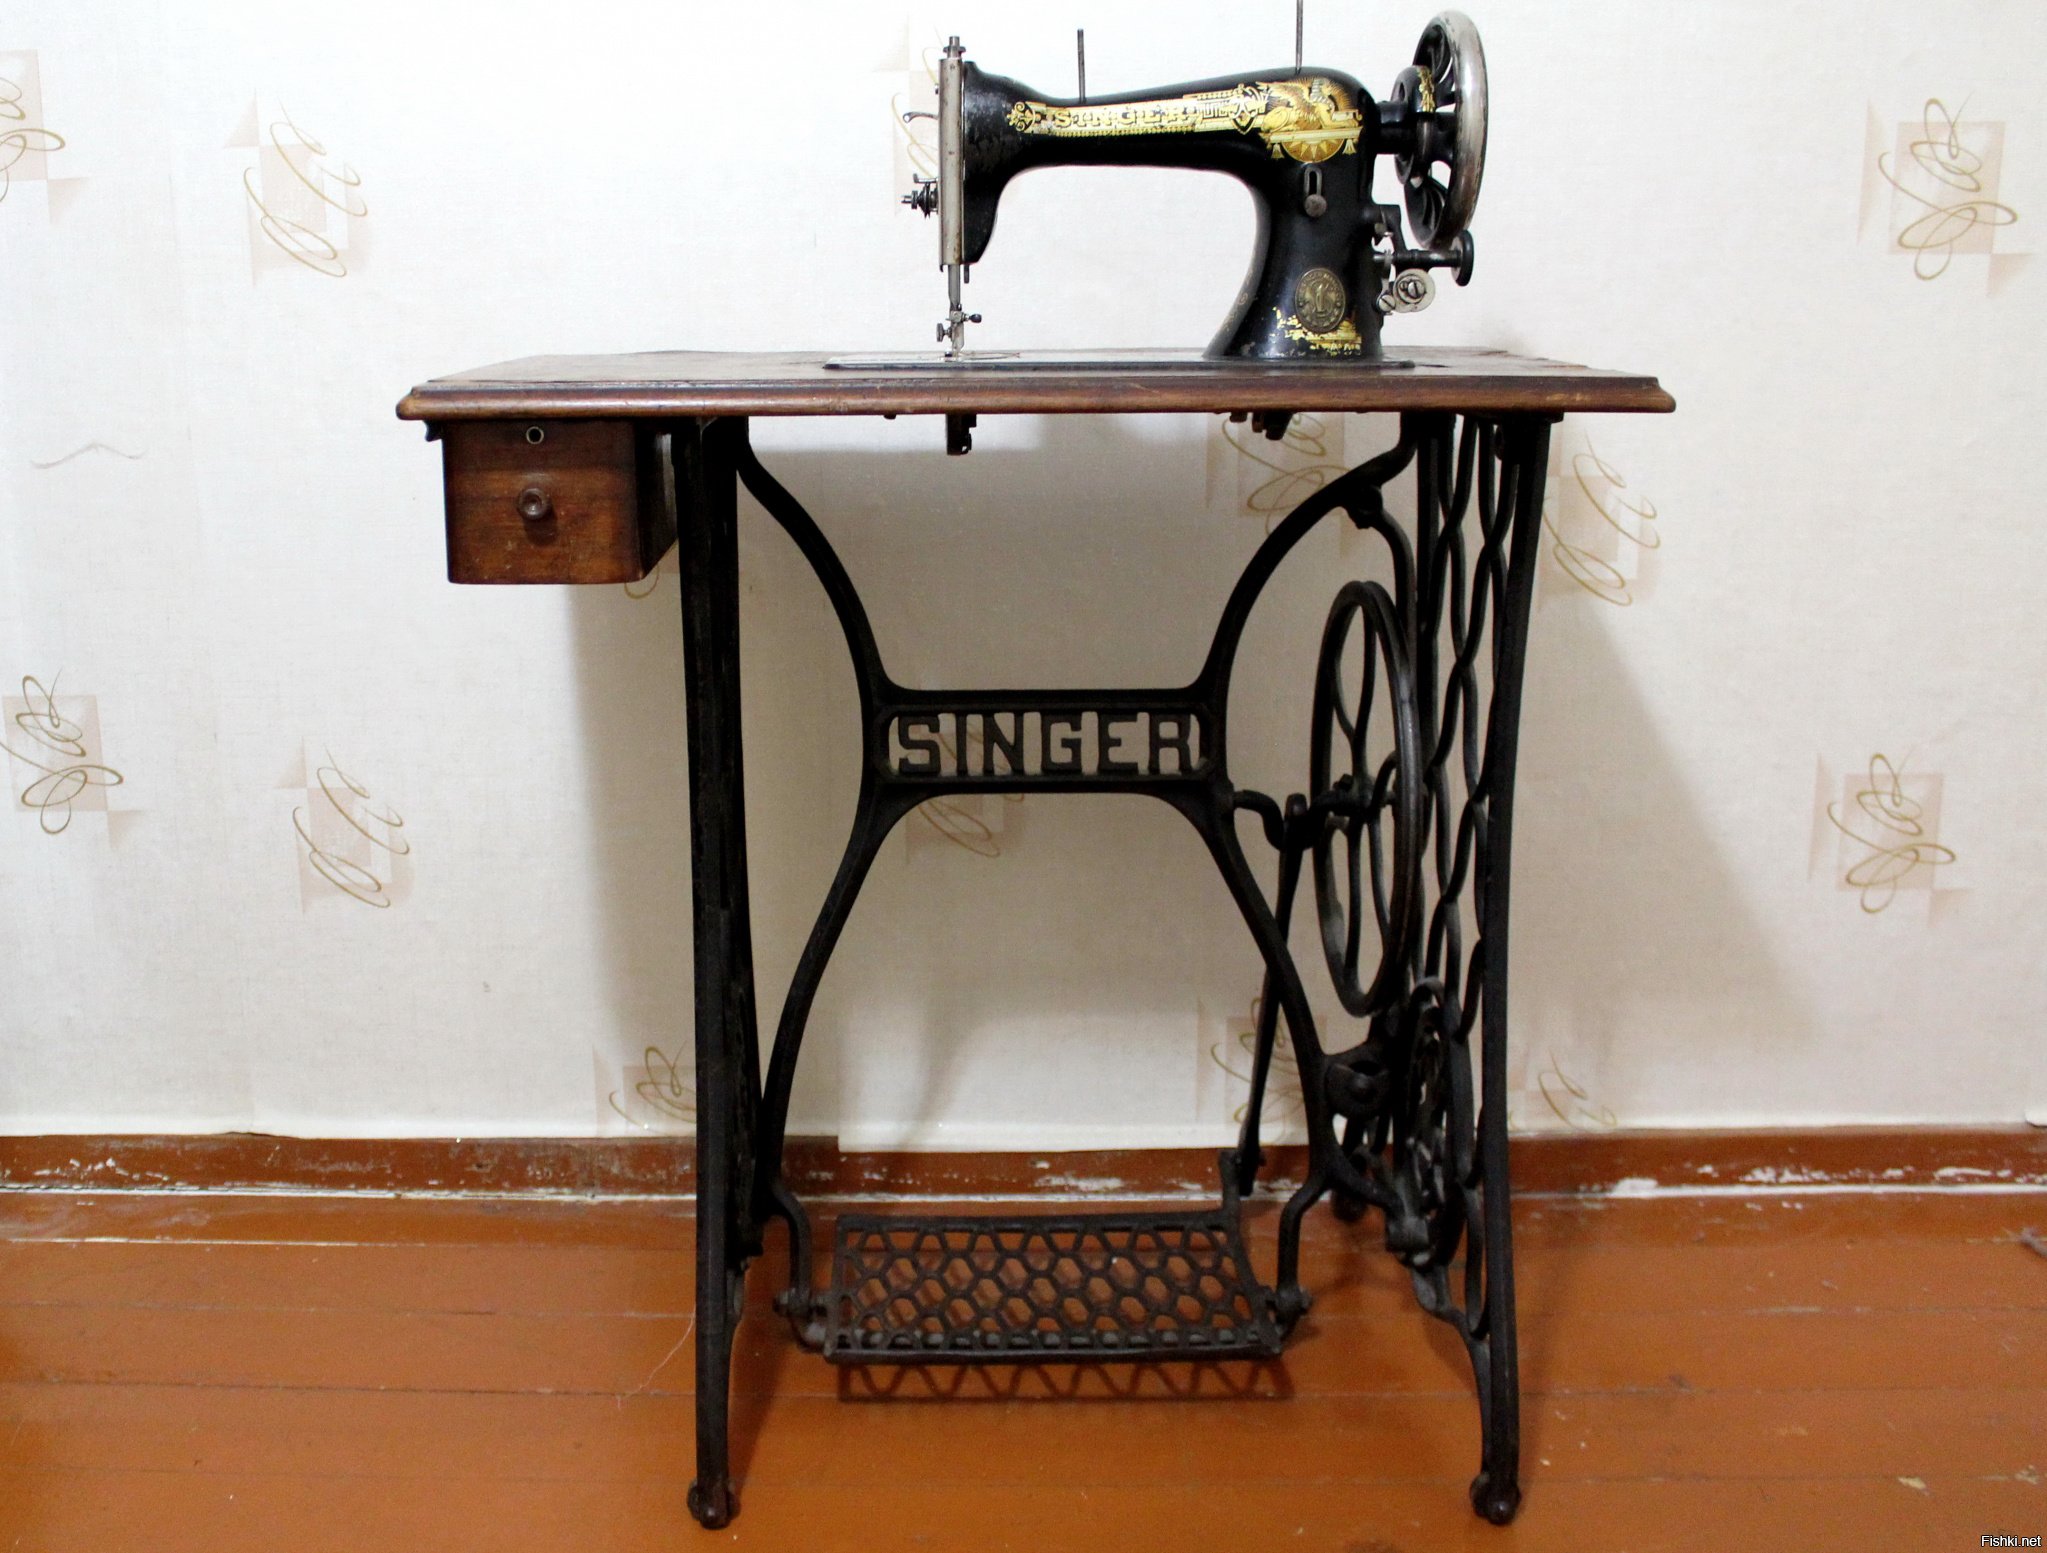 Купить продать швейную машинку. Швейная машинка (Zinger super 2001). Швейная машинка Зингер 1950 г. Zinger швейная машинка ножная. Машинка Зингер 2 швейная.